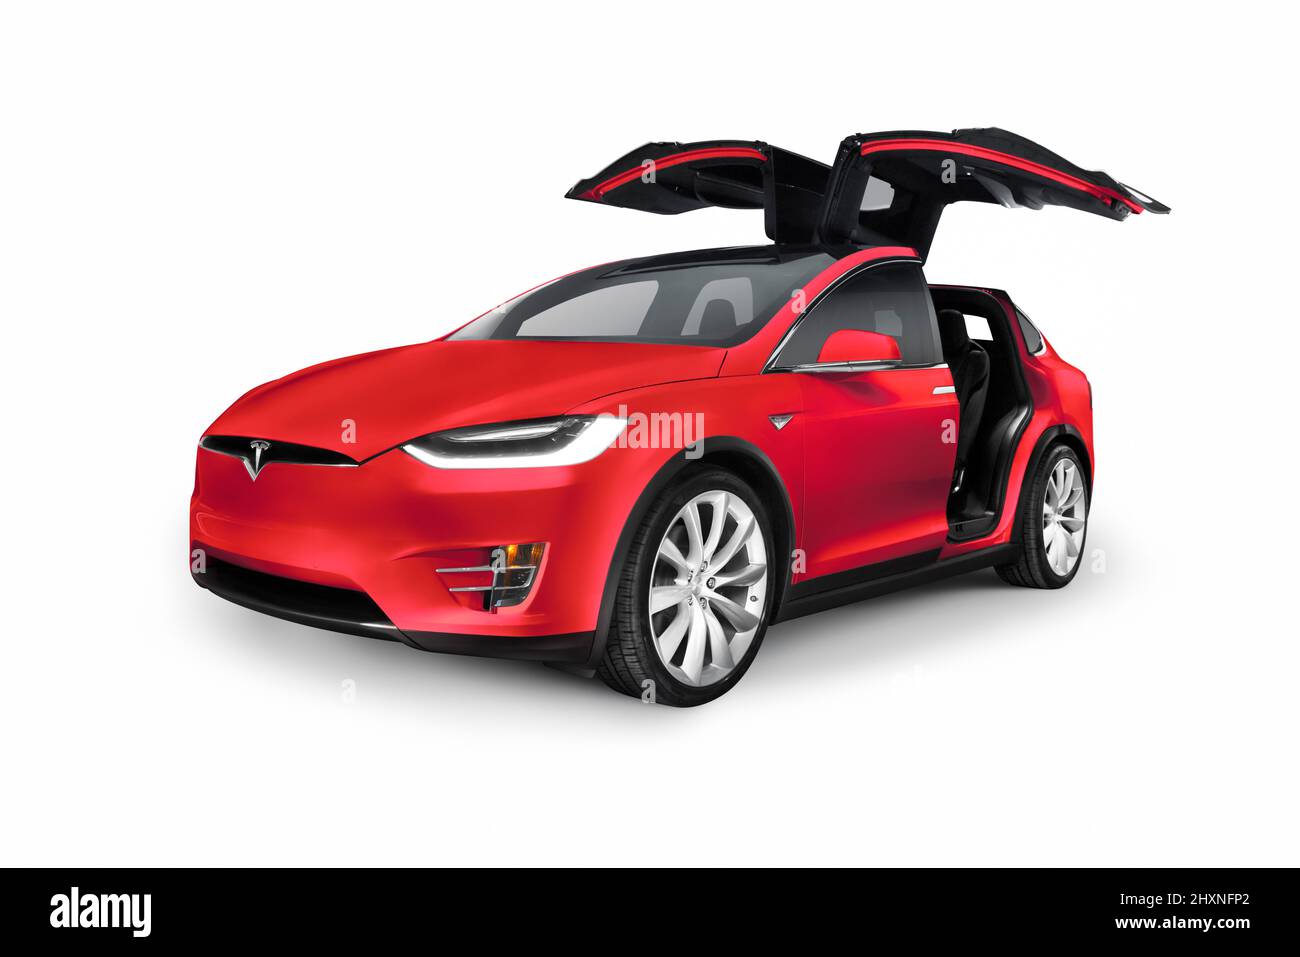 Licencia e impresiones en MaximImages.com - coche eléctrico de lujo de Tesla, foto de archivo de automoción. Foto de stock